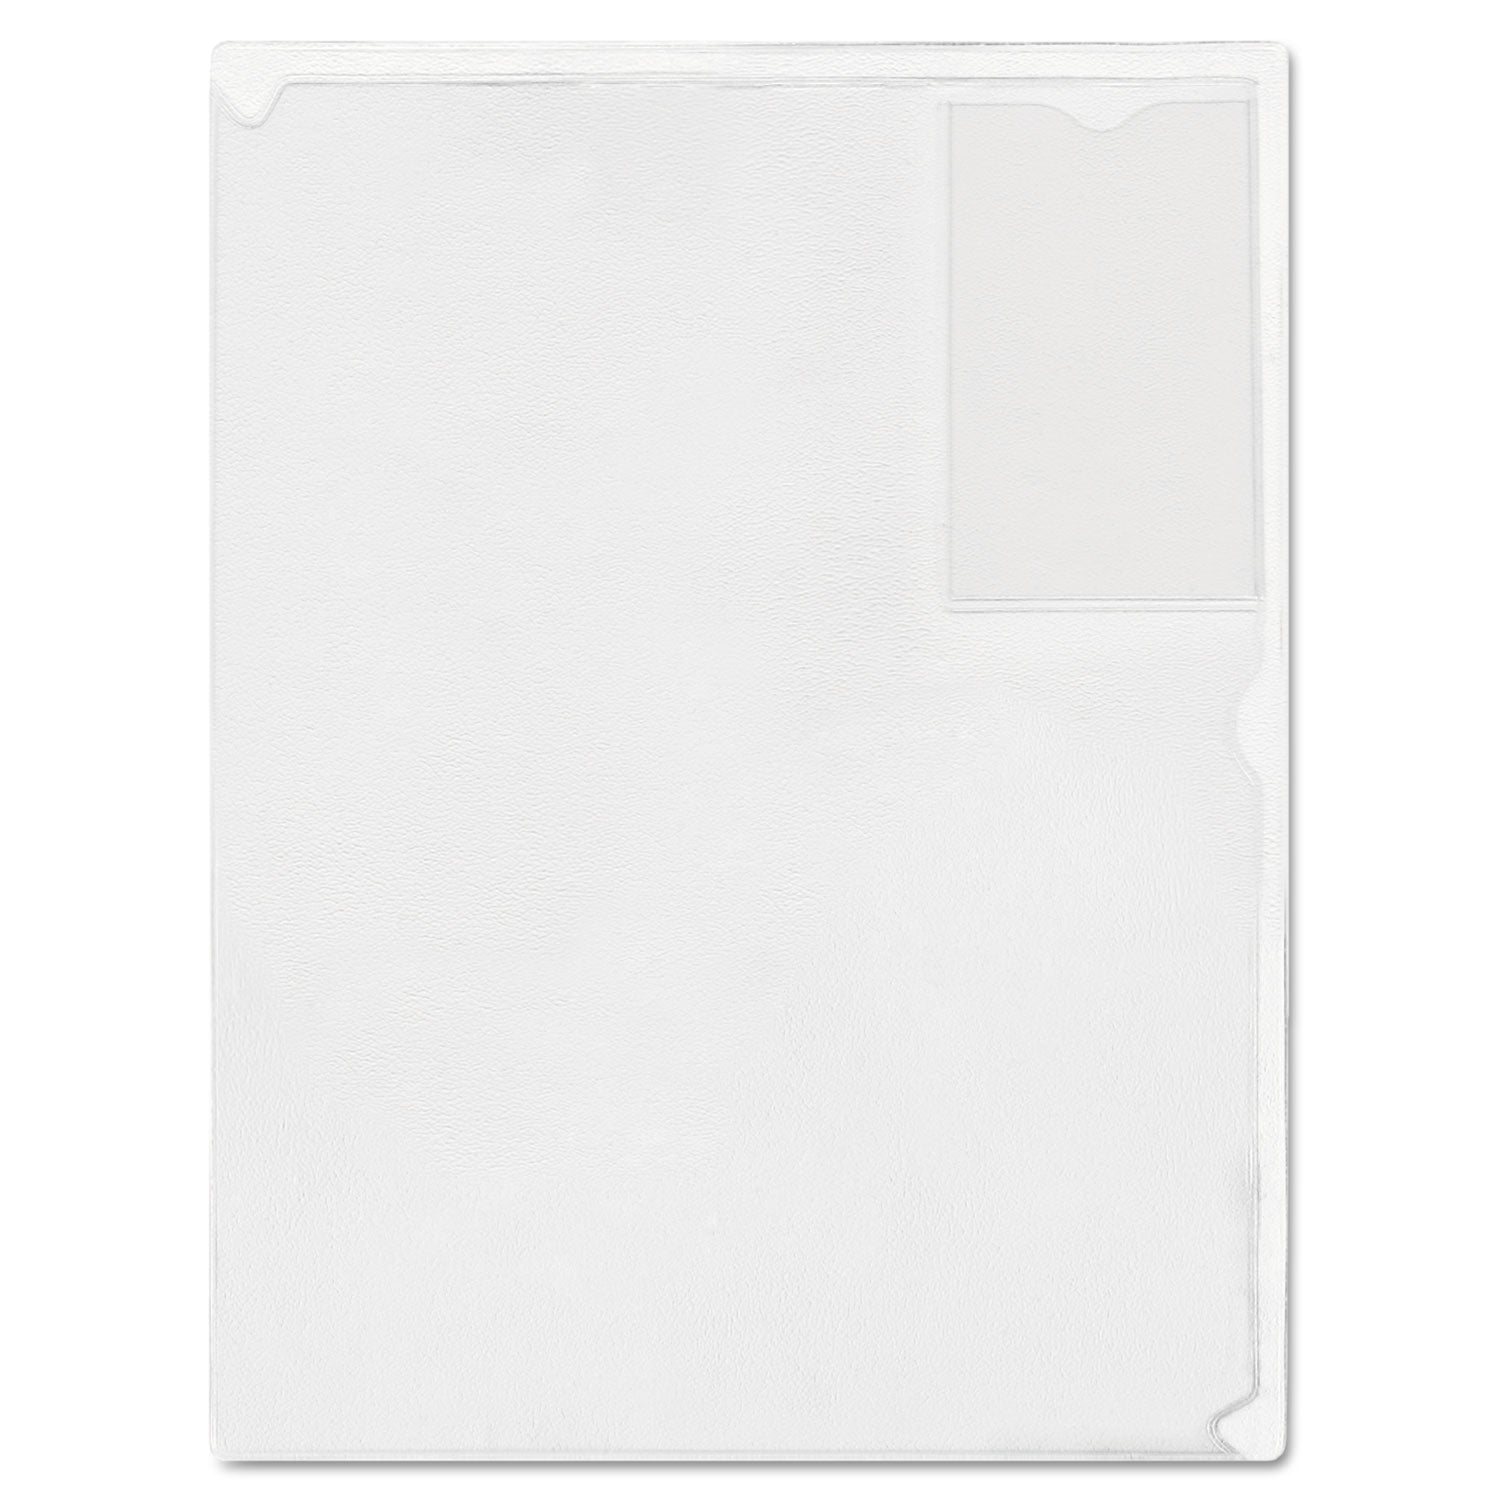 Kleer-File Poly Folder with ID Pocket, Letter Size, Transparent - 